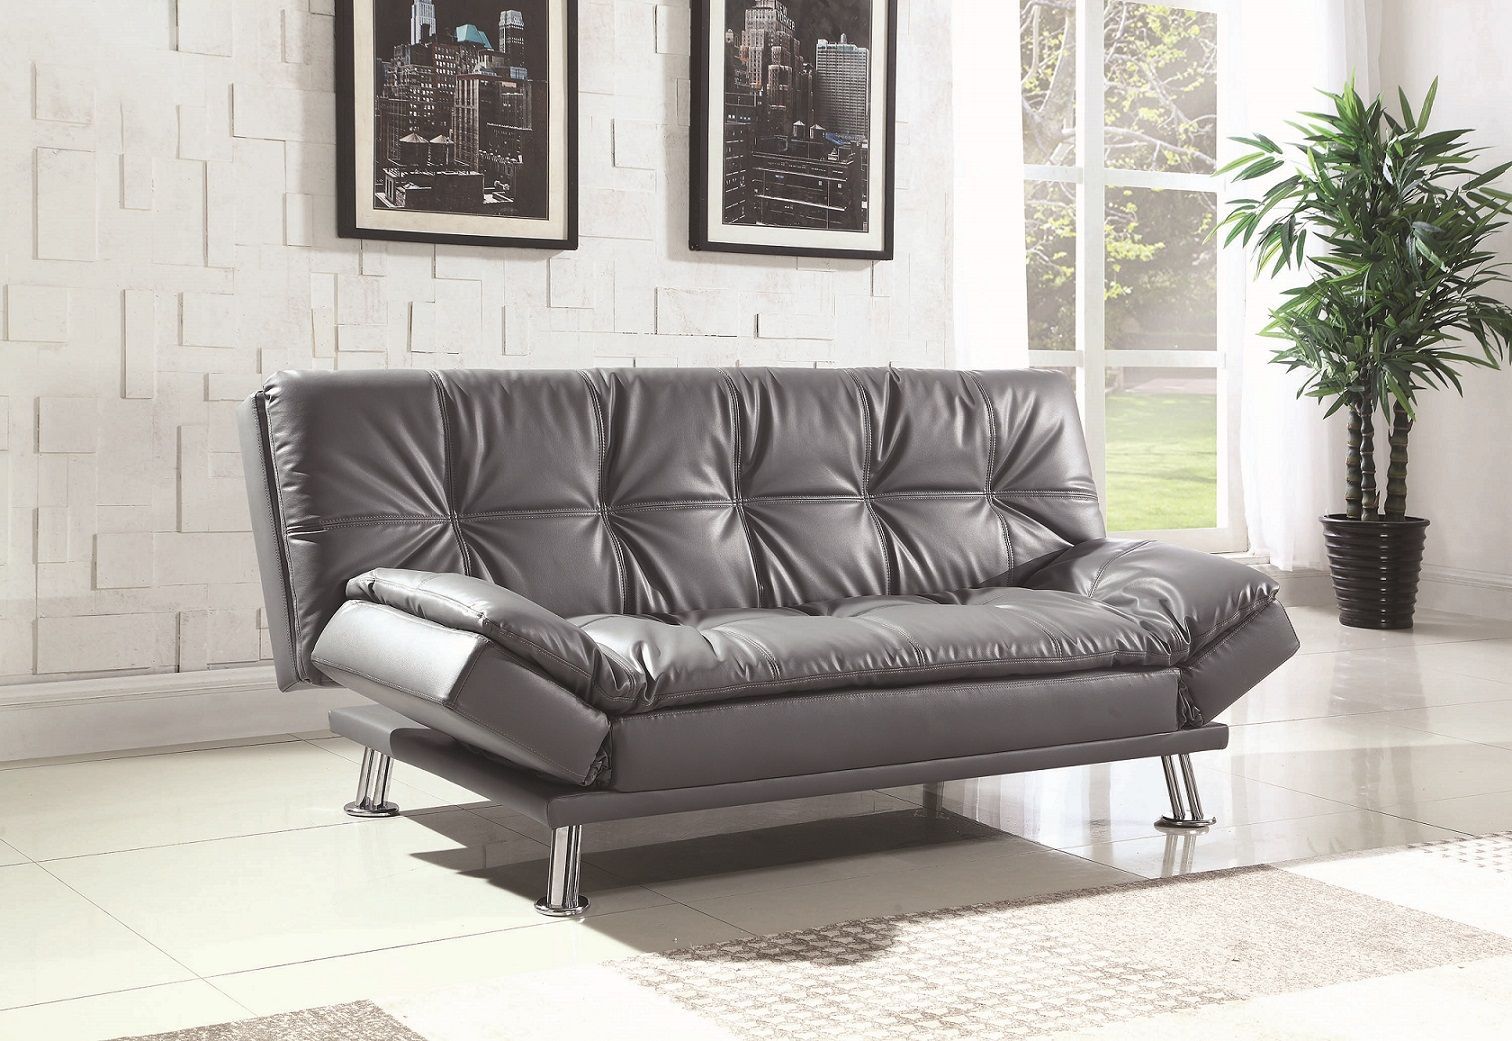 Dilleston Grey Bed Coaster – Dallas Furniture